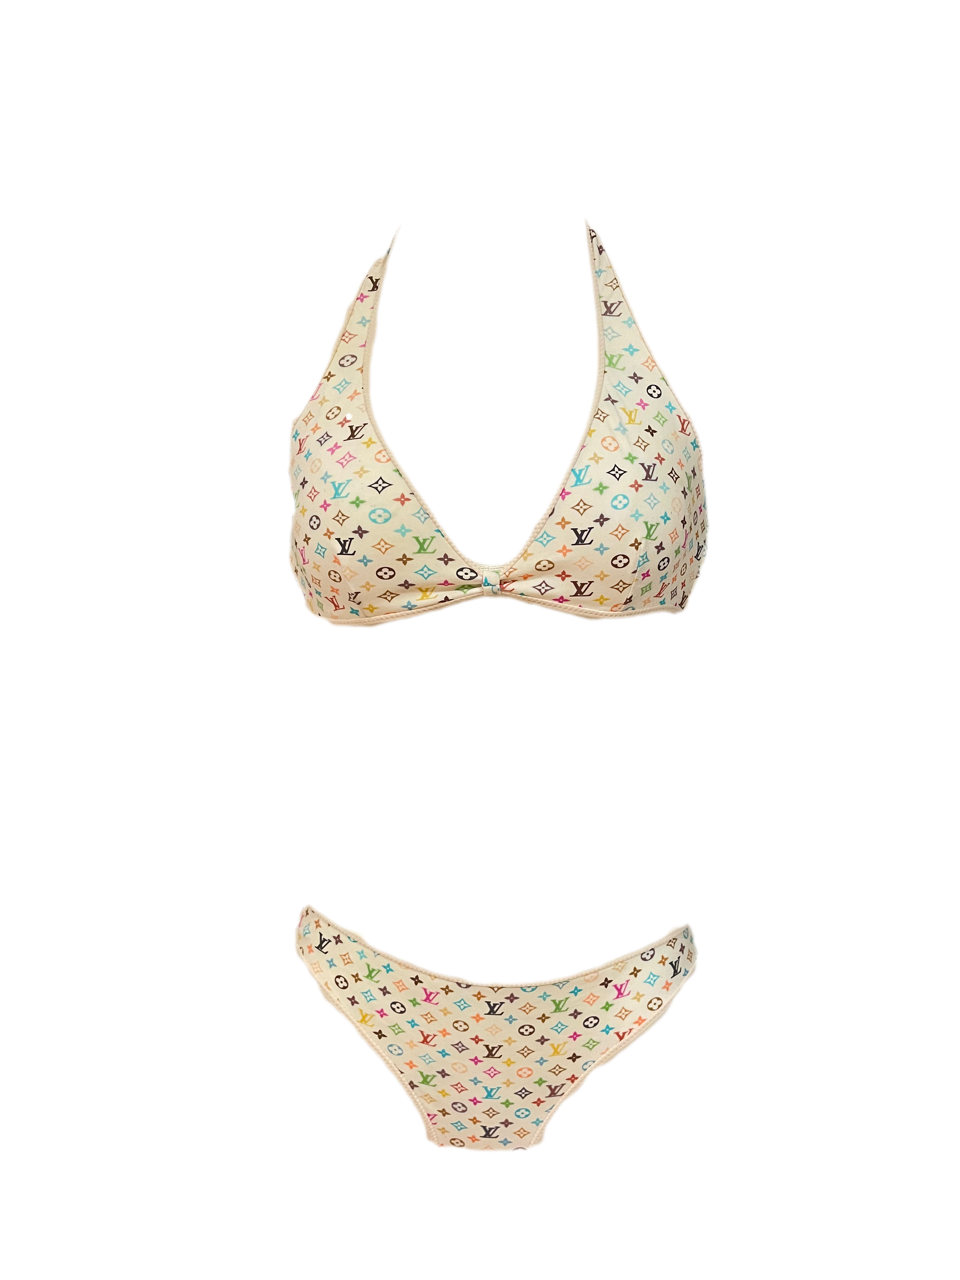 Louis Vuitton x Takashi Murakami Bikini – ADORE